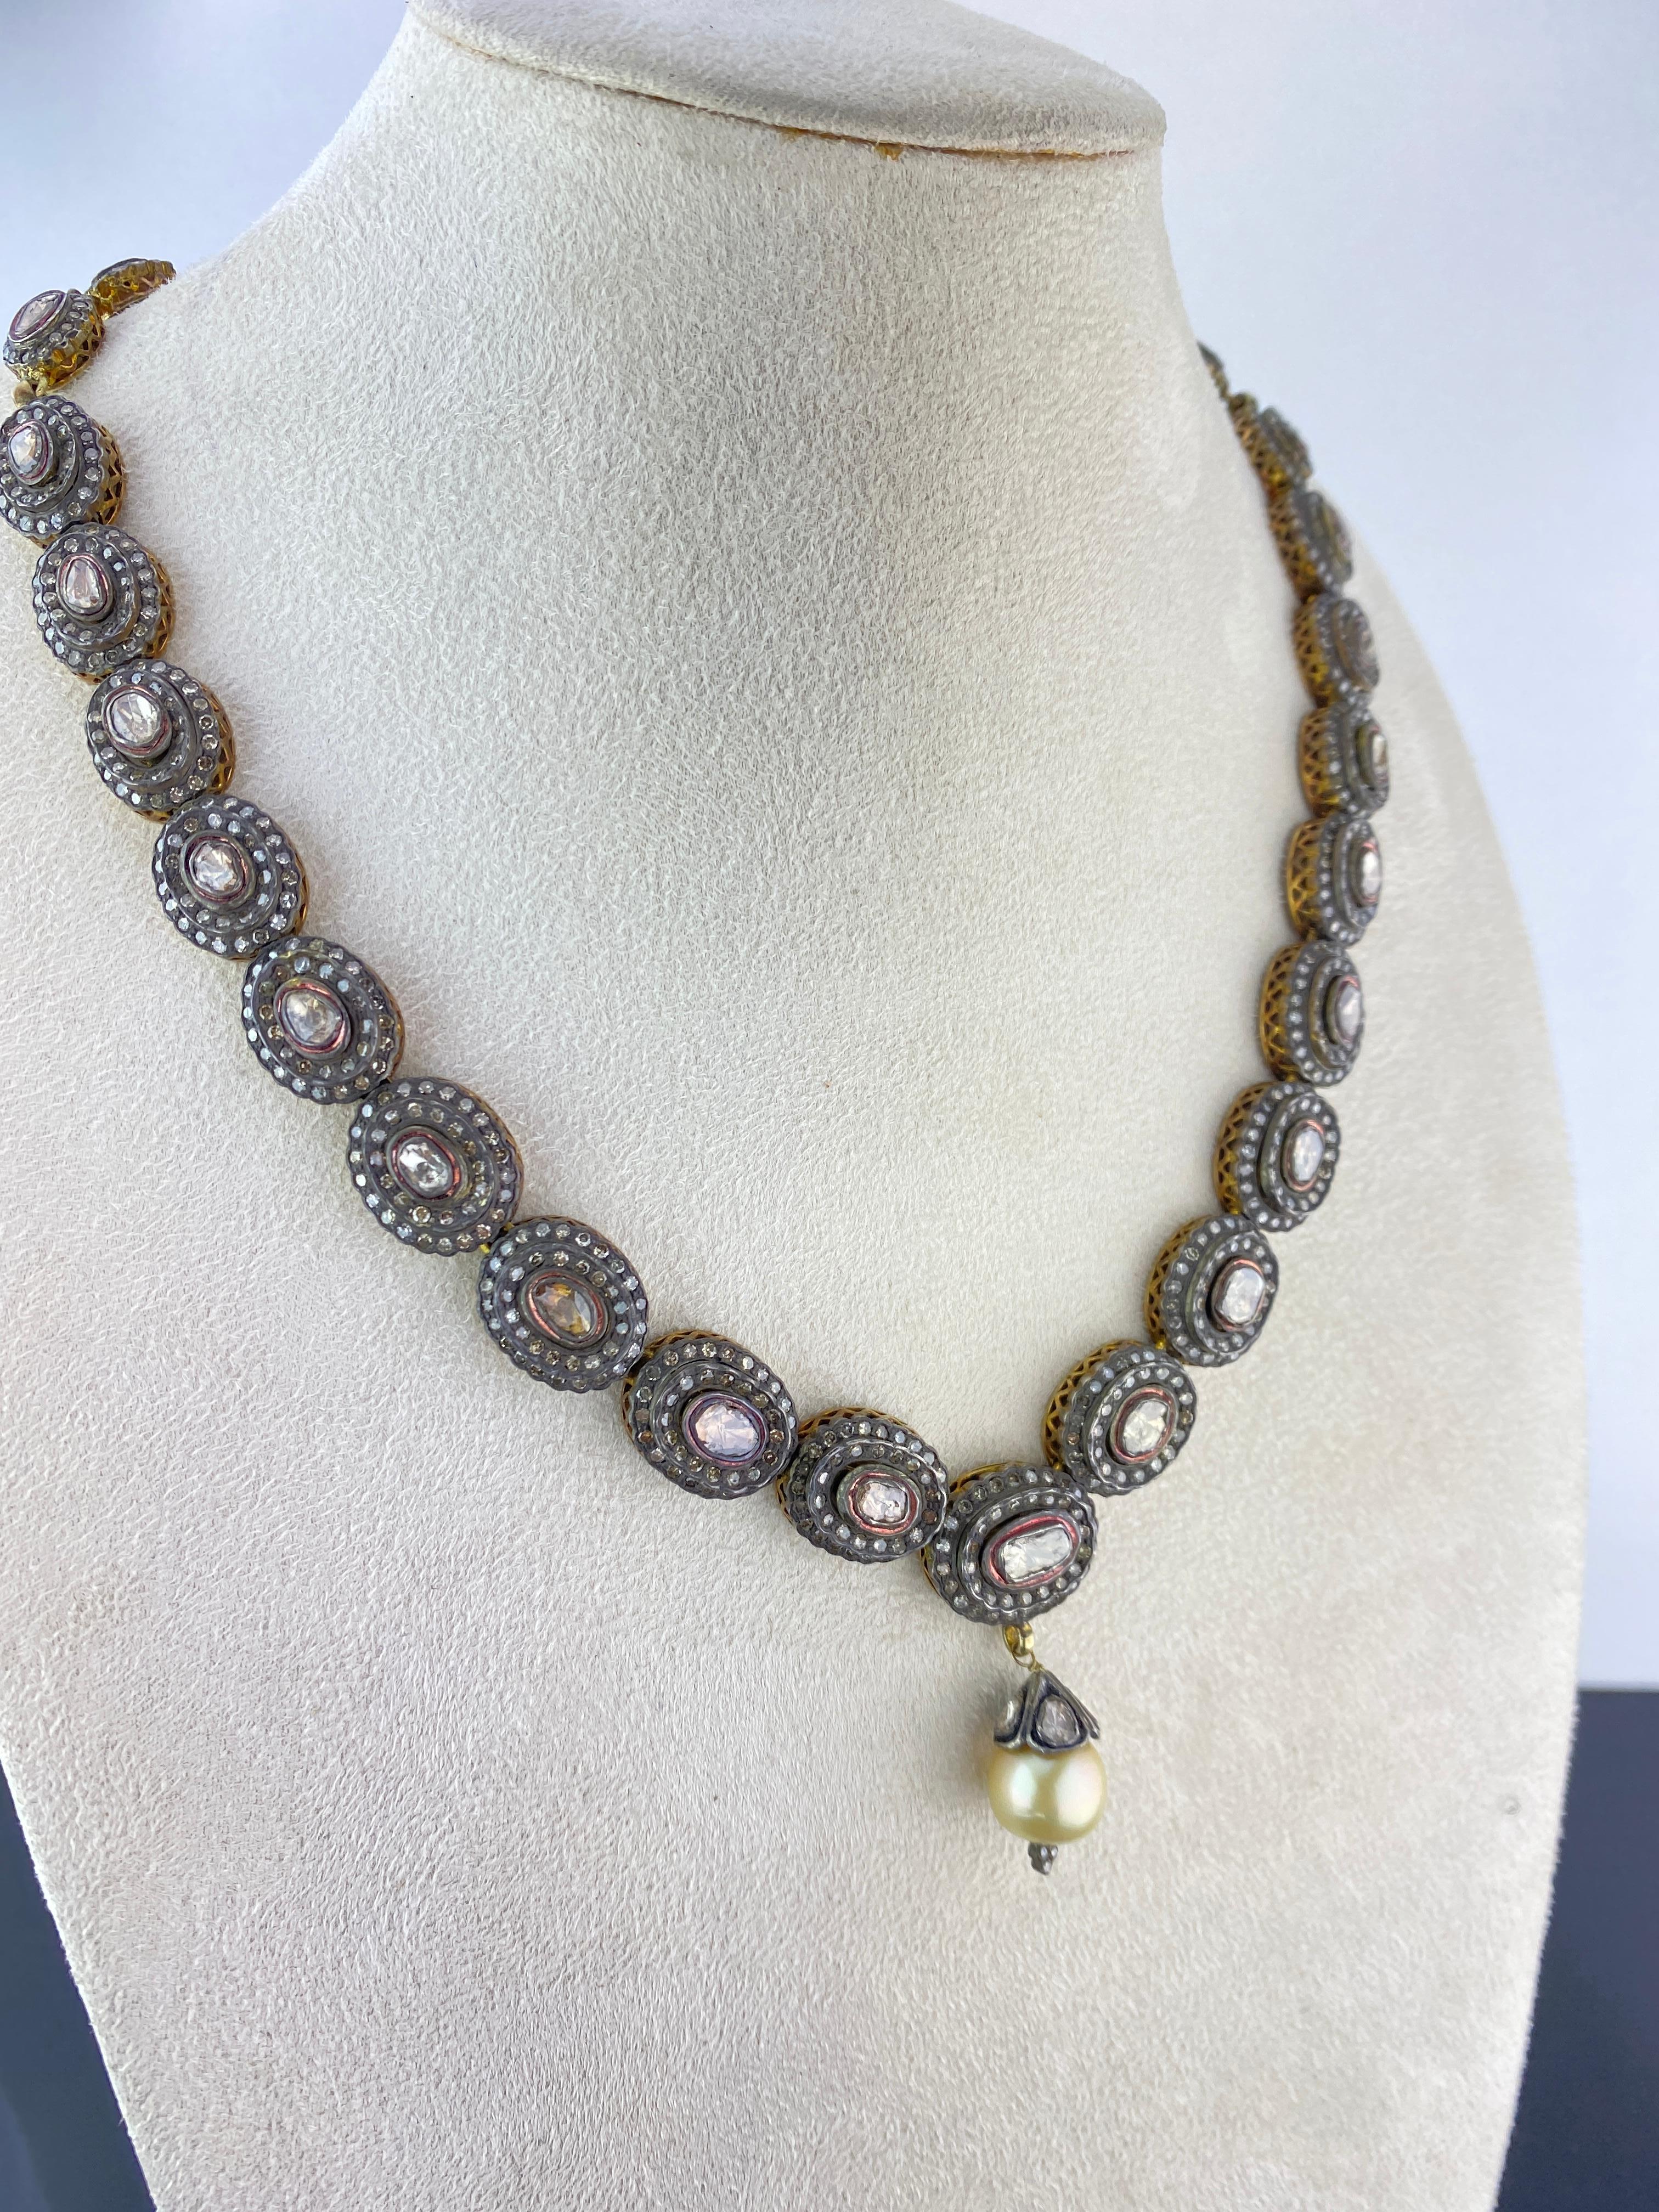 antique necklaces for sale